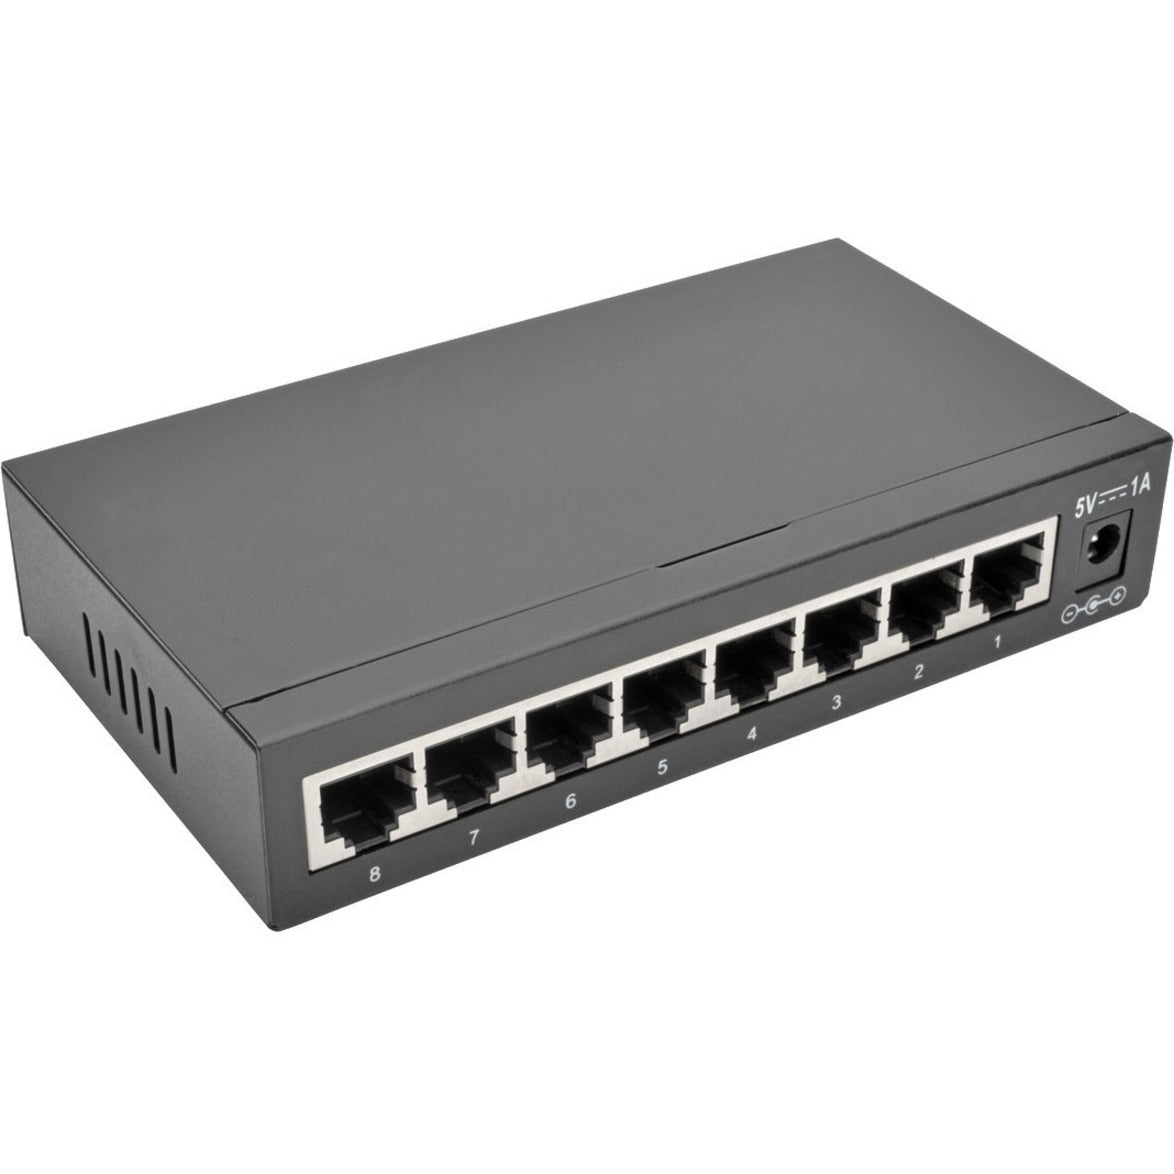 Tripp Lite NG8 8-Port 10/100/1000 Mbps Desktop Gigabit Ethernet Unmanaged Switch Metal Housing